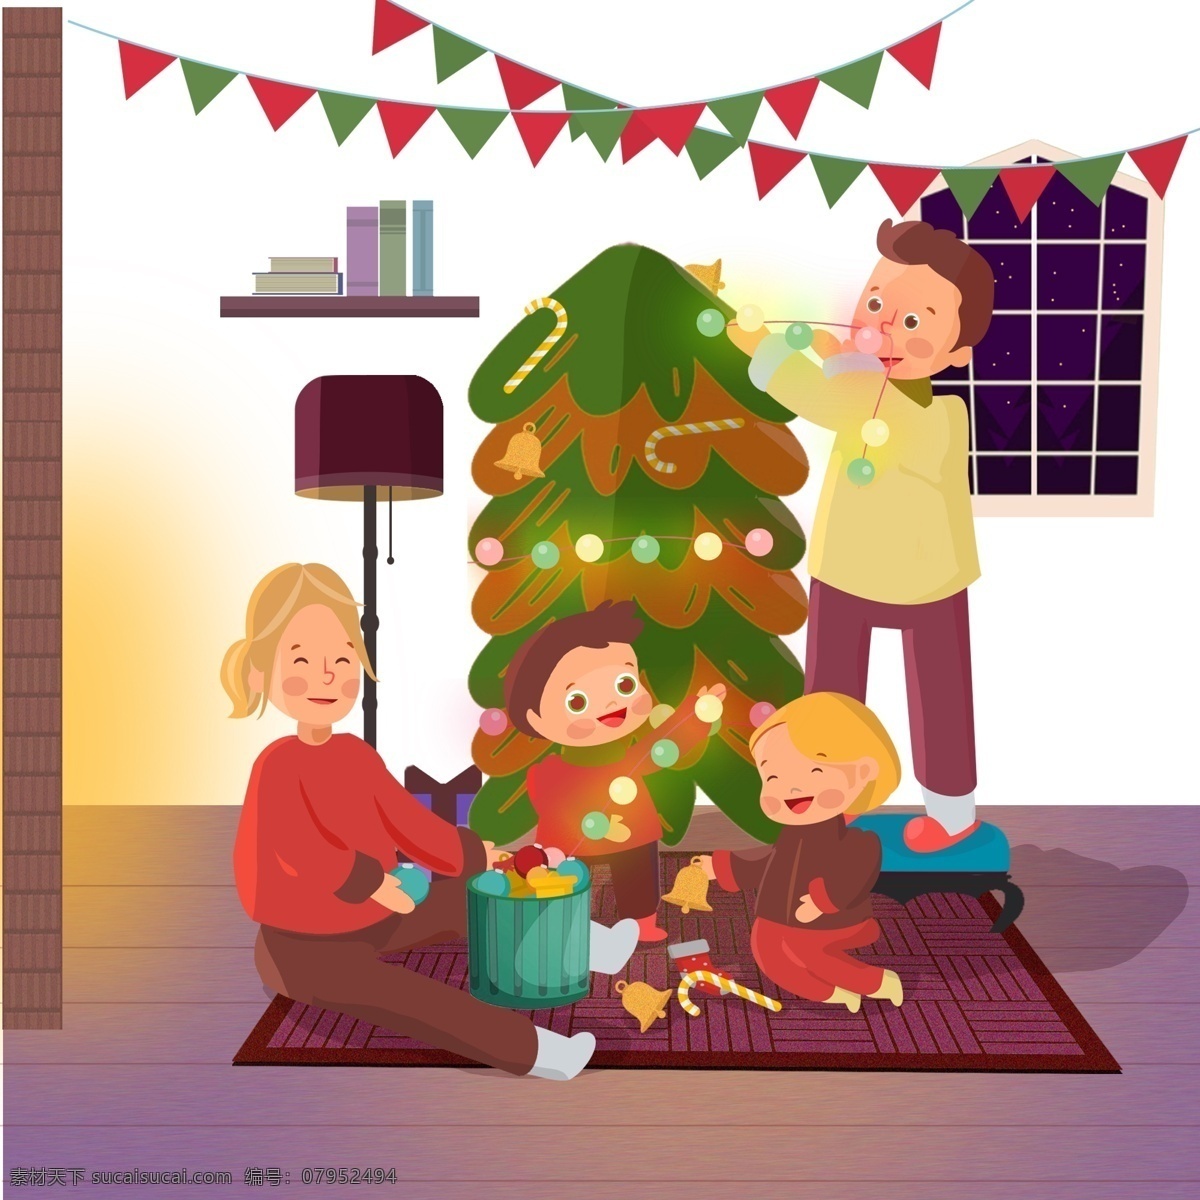 圣诞节 温馨 家庭 一家人 节日 场景 沙发 爸爸 妈妈 圣诞 圣诞树 彩灯 彩球 袜子 壁炉 温暖冬天